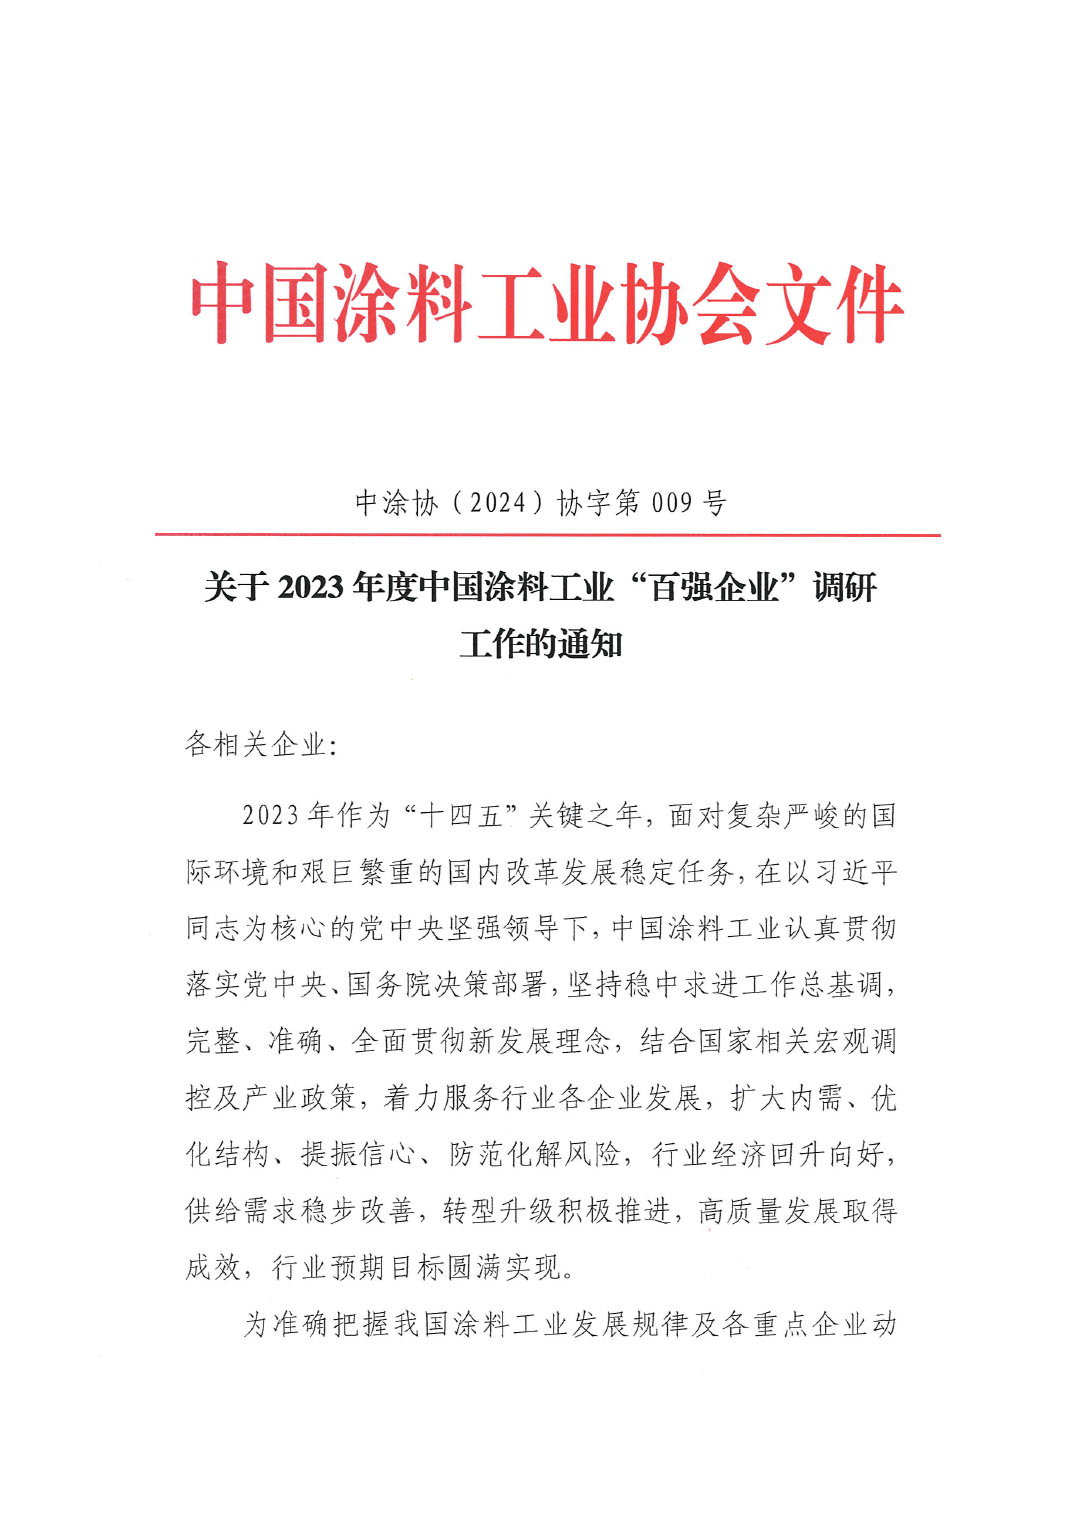 關于2023年度中國涂料工業“百強企業”調研工作的通知(2)(1)-1